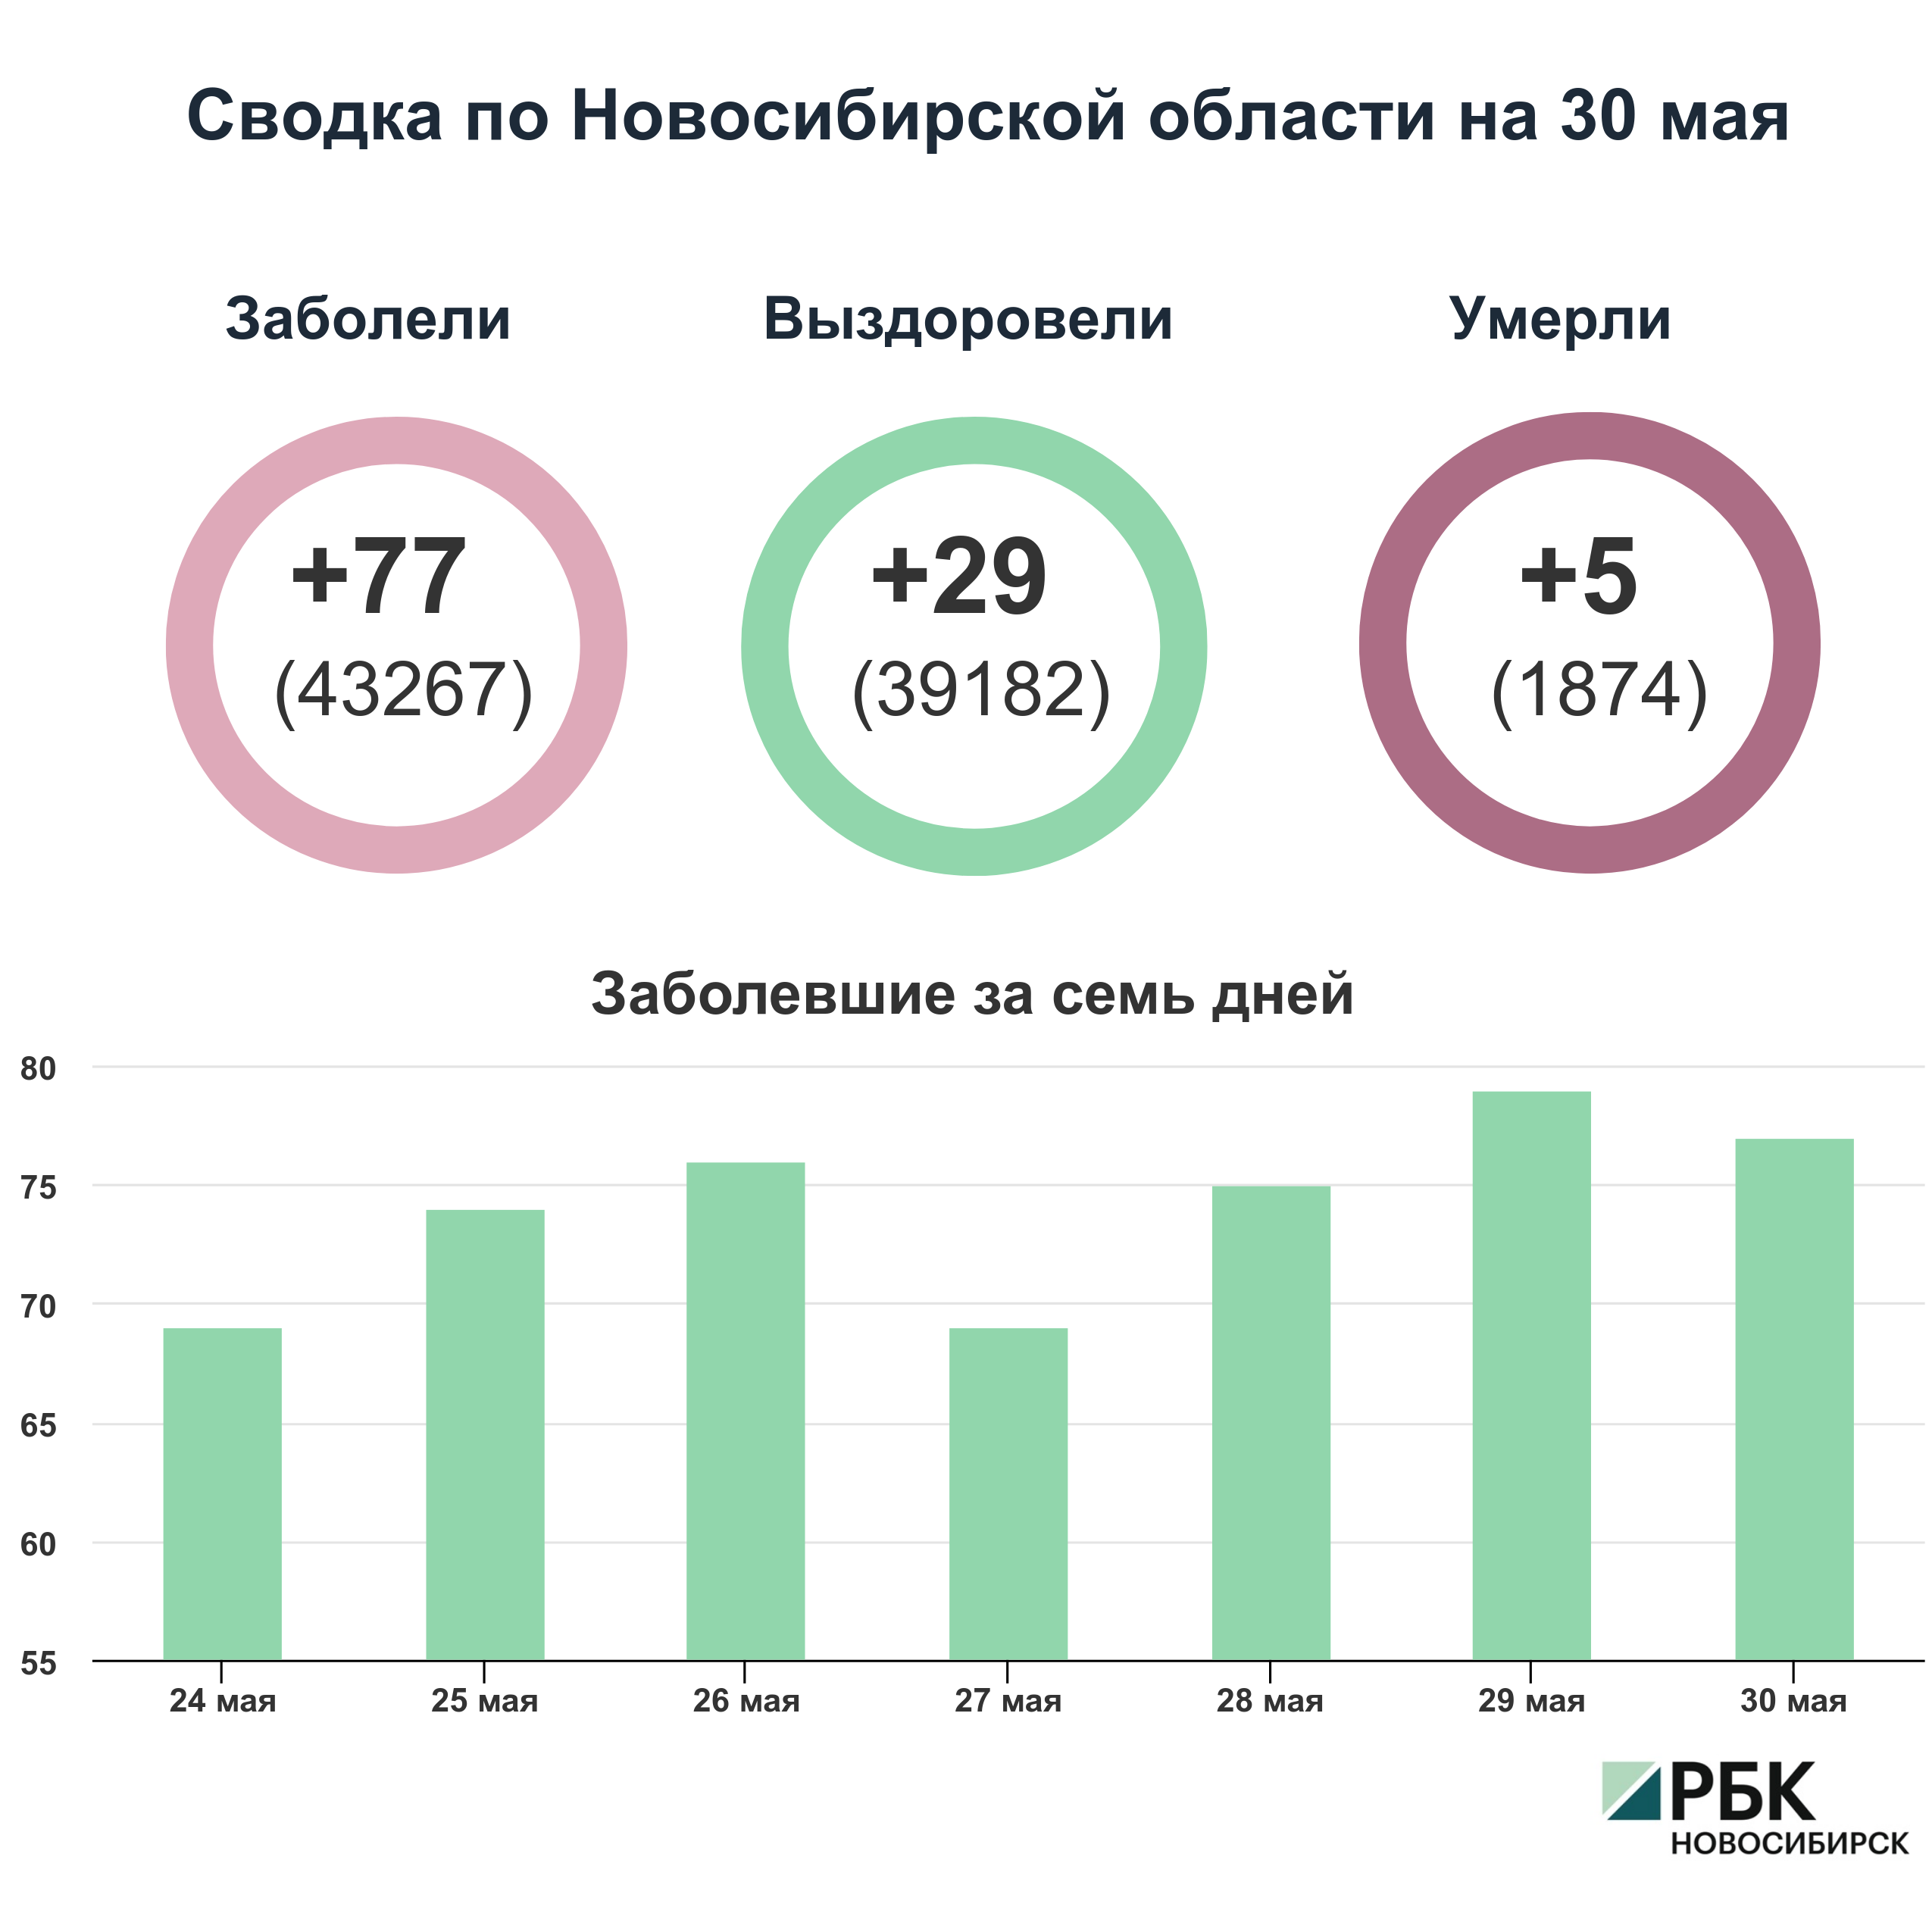 Коронавирус в Новосибирске: сводка на 30 мая